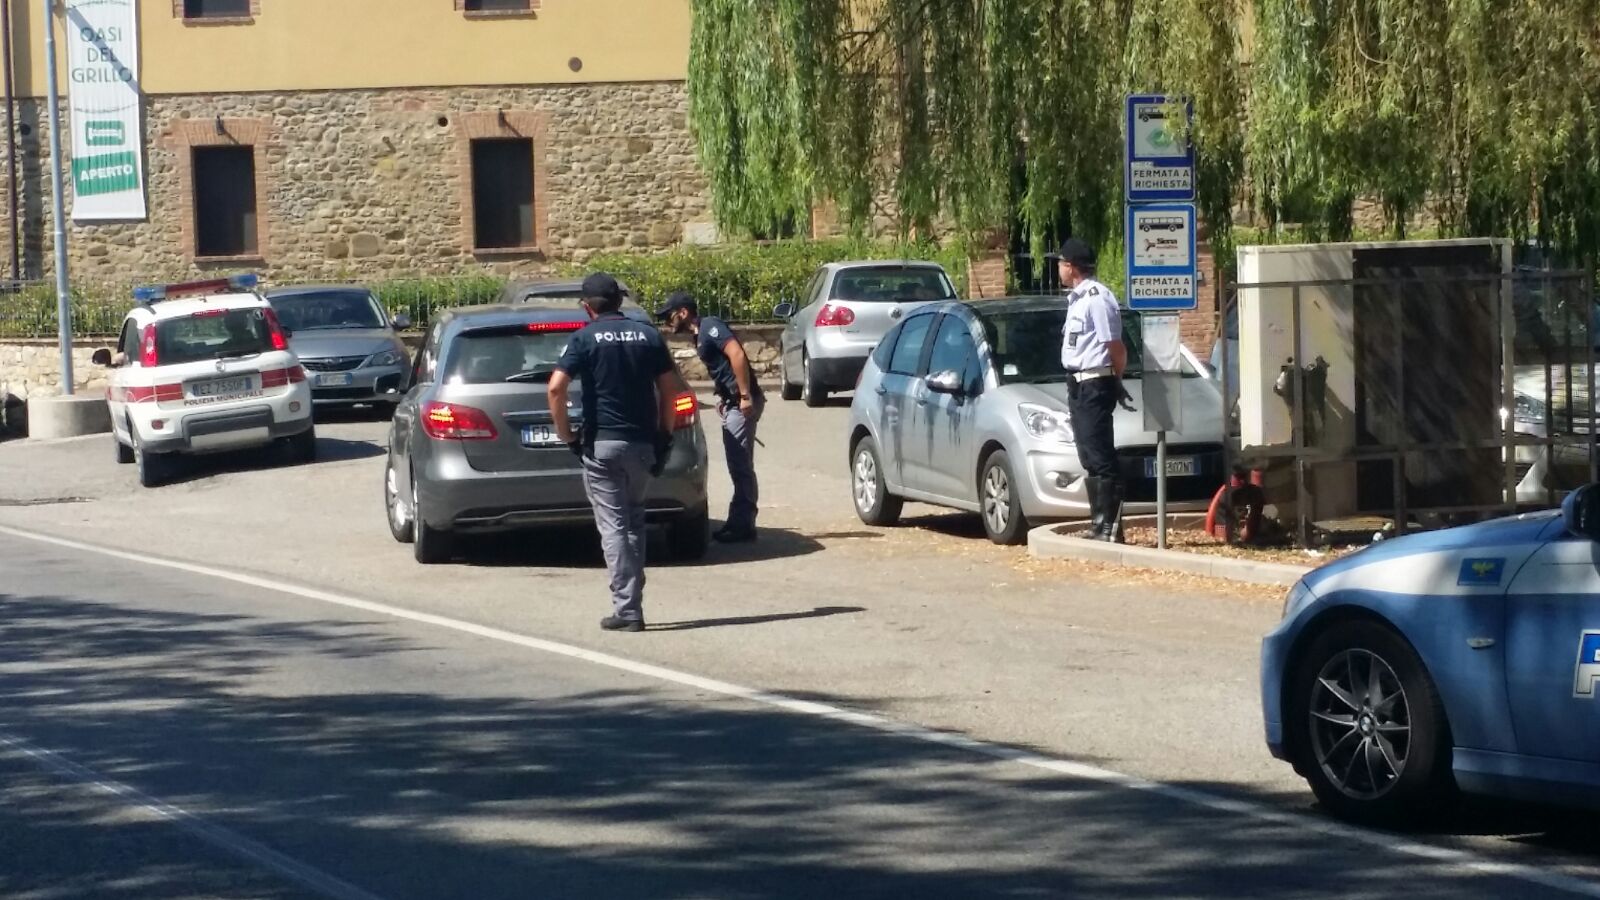 Polizia Di Stato E Municipale Insieme A Castelnuovo Berardenga Per I Controlli E Per Contrastare